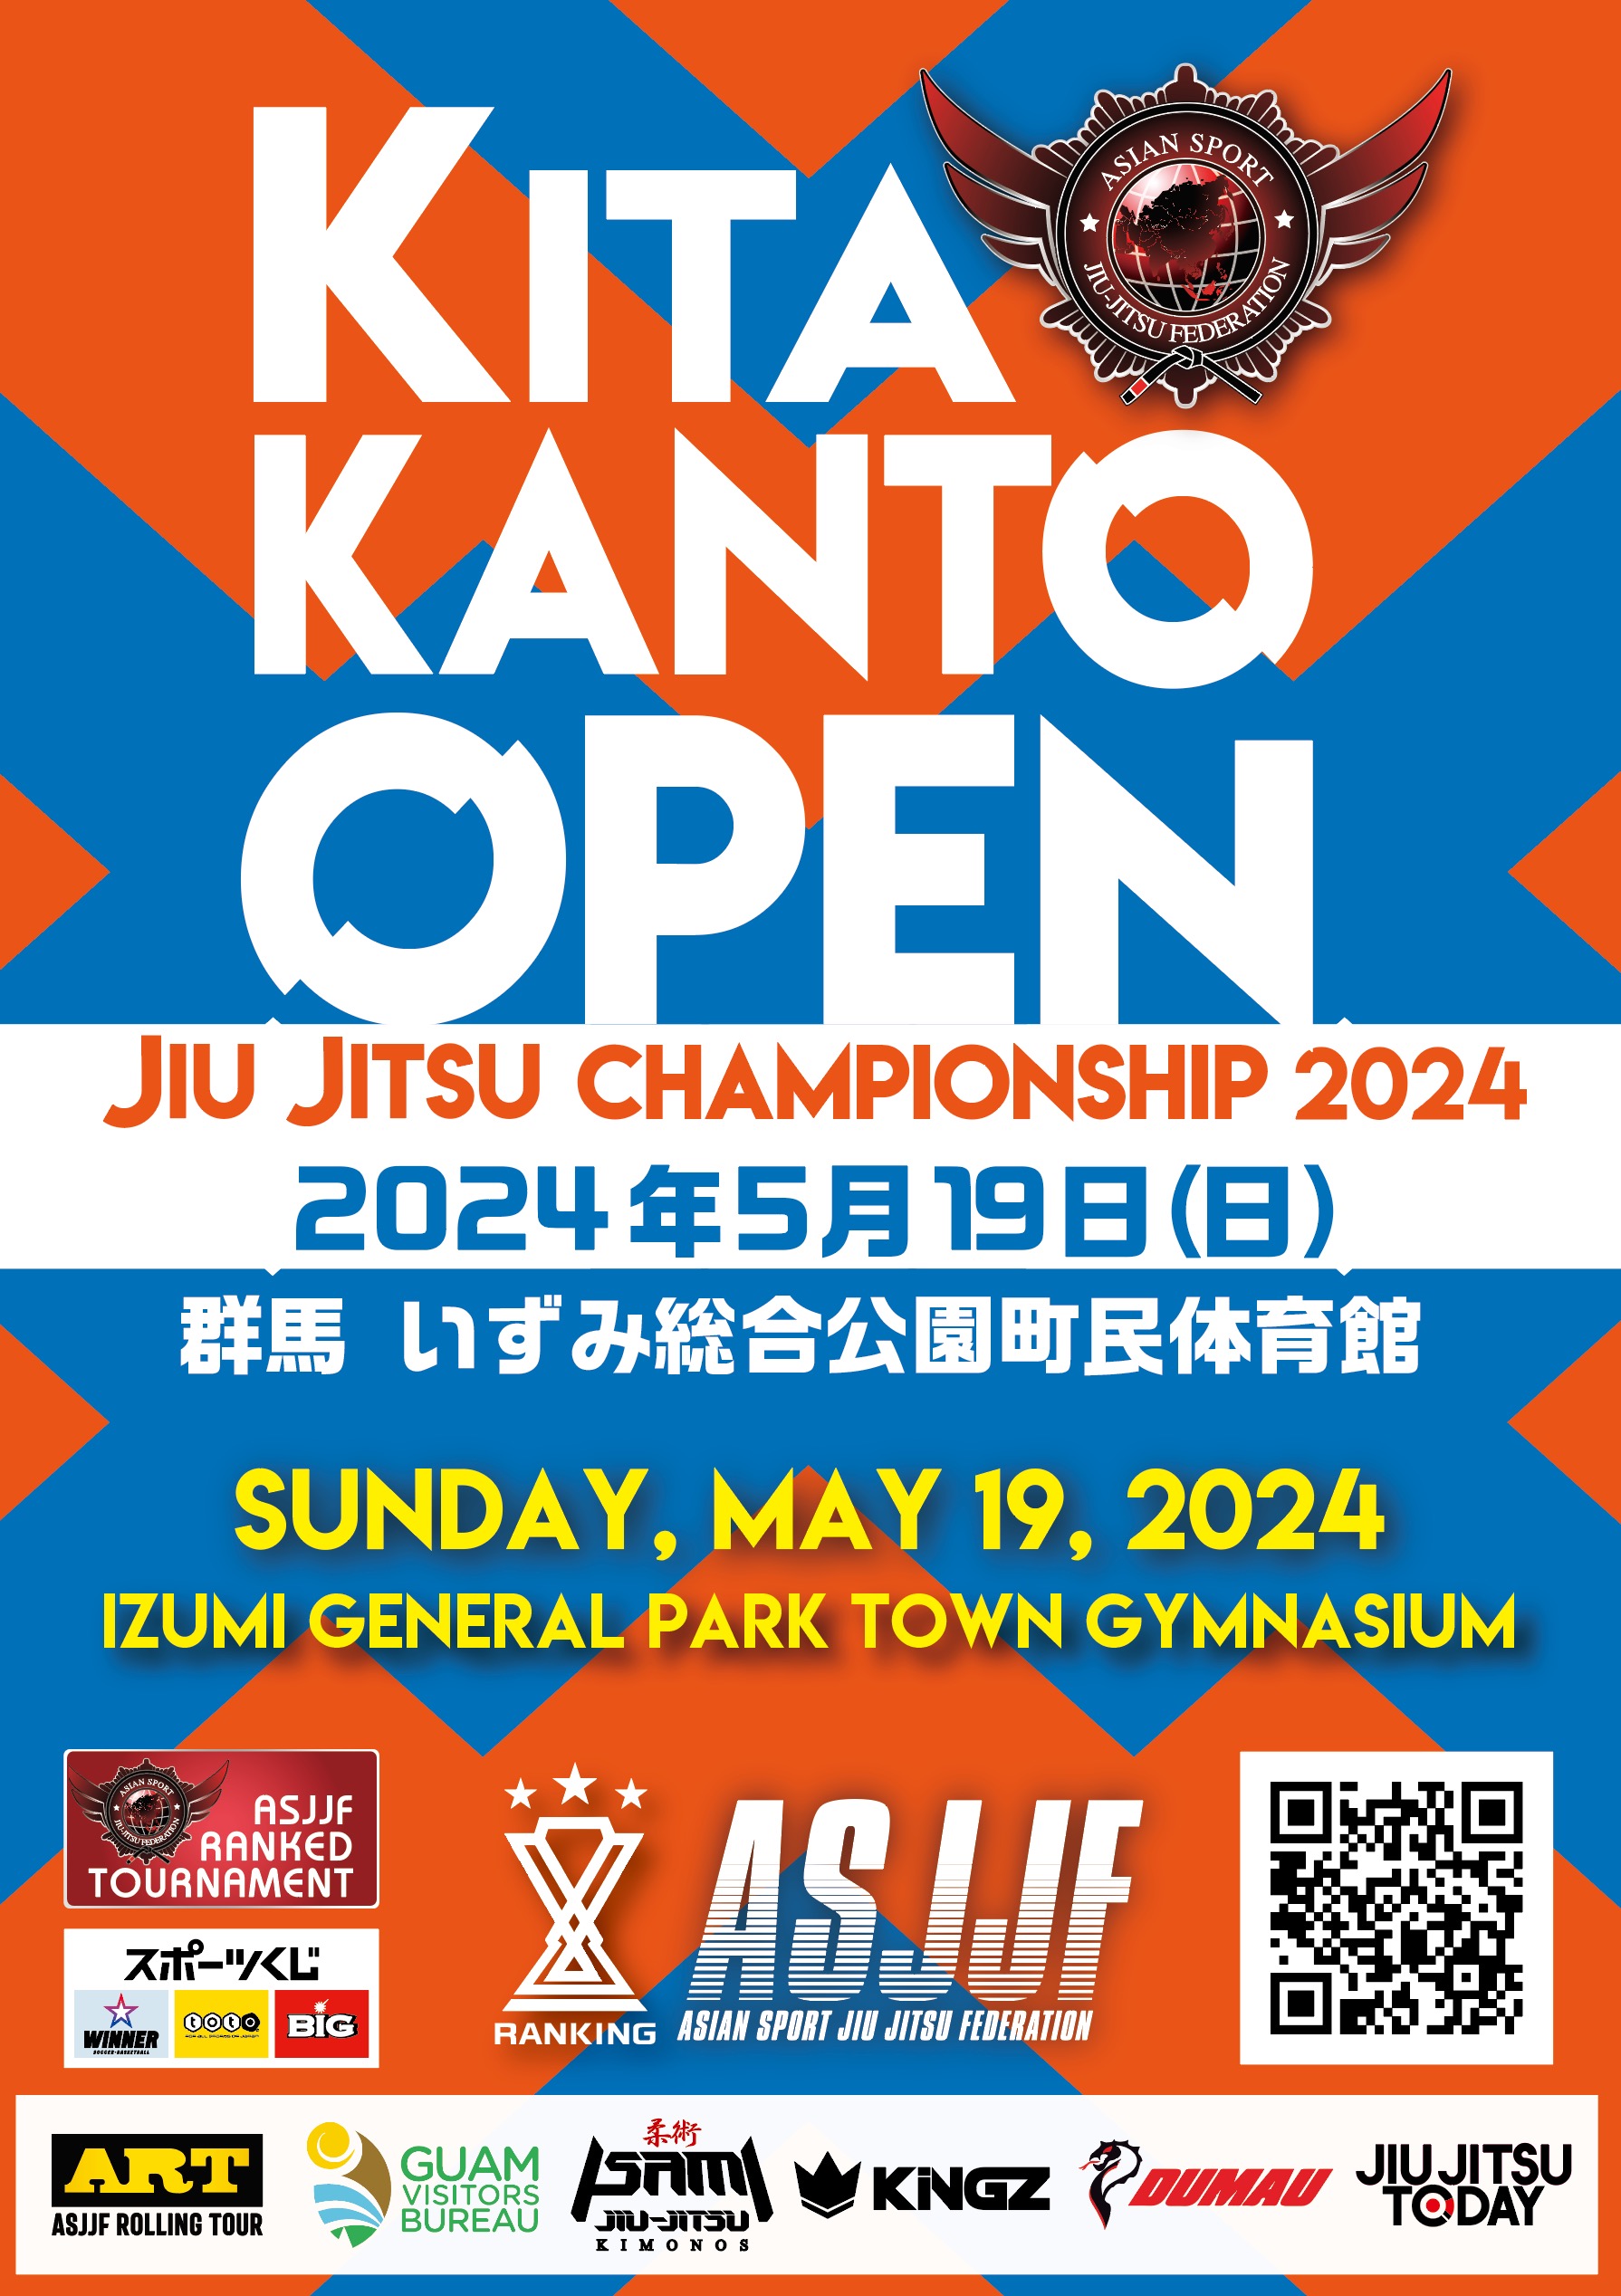 kita kanto open jiu jitsu championship 2024 (GI)